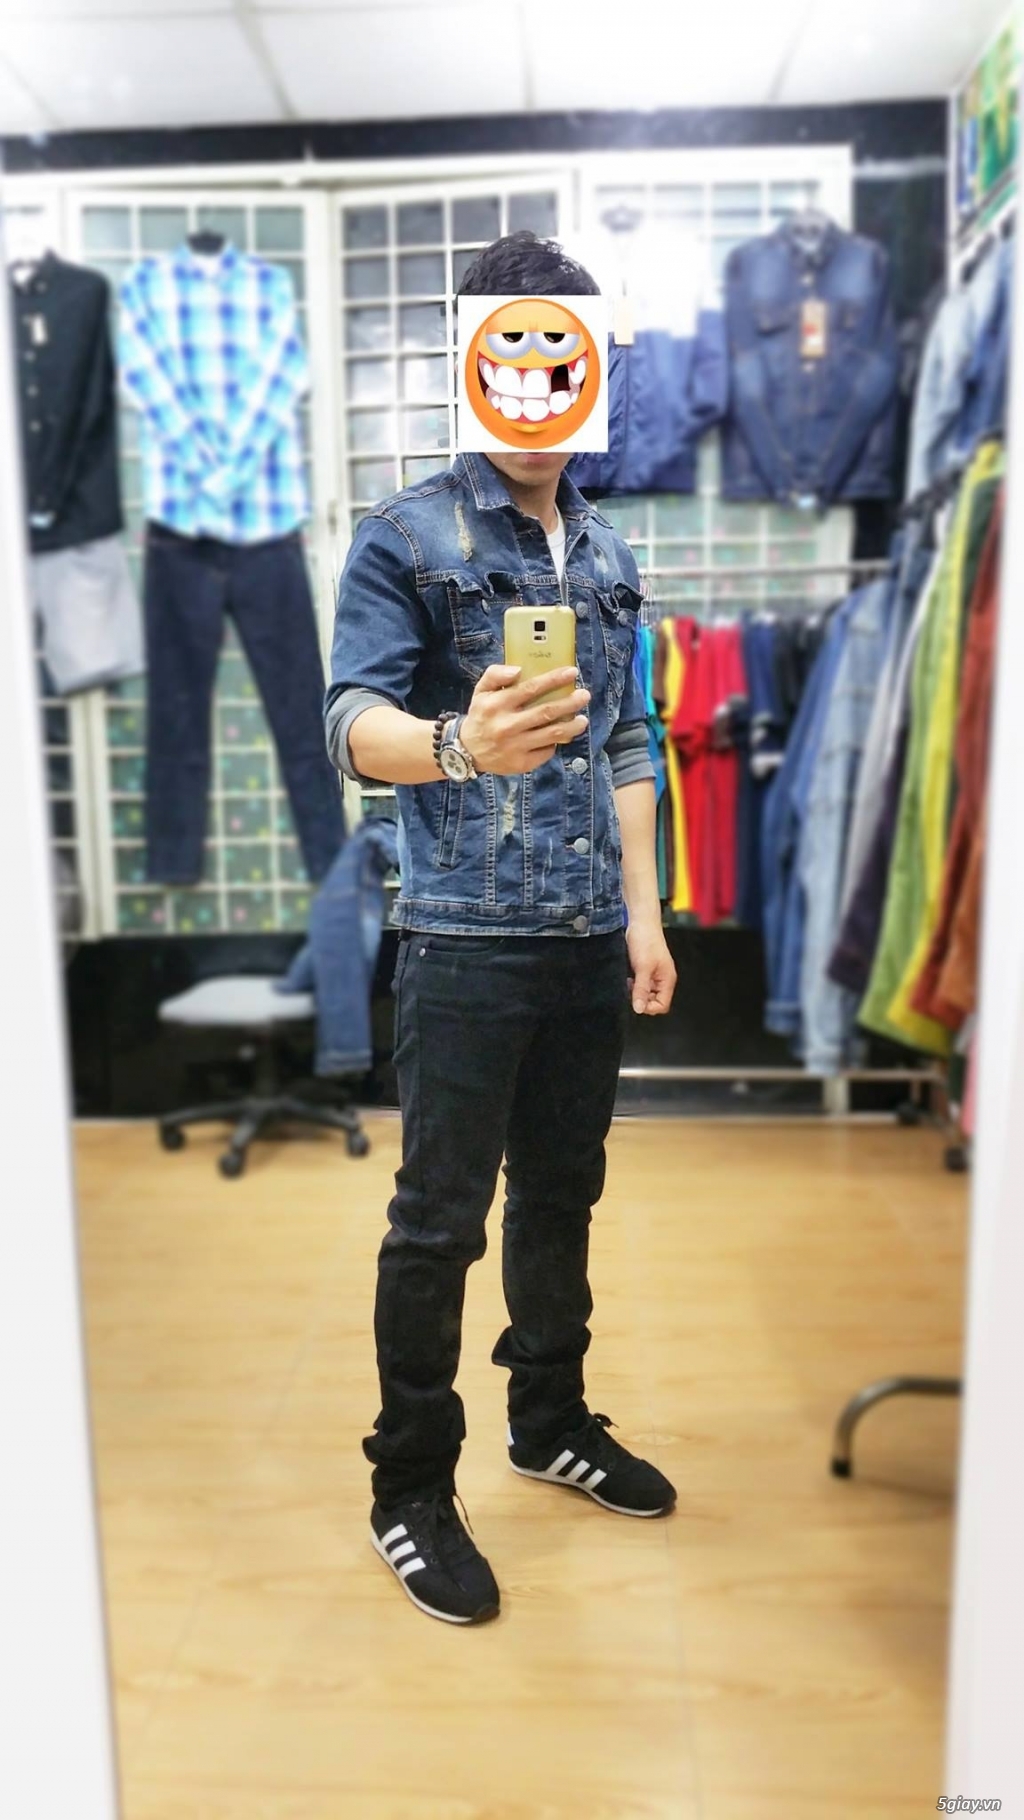 [TRÙM ĐỒ JEANS] - FCshop Chuyên quần jeans, sơmi jeans, khoác jeans .. - 13